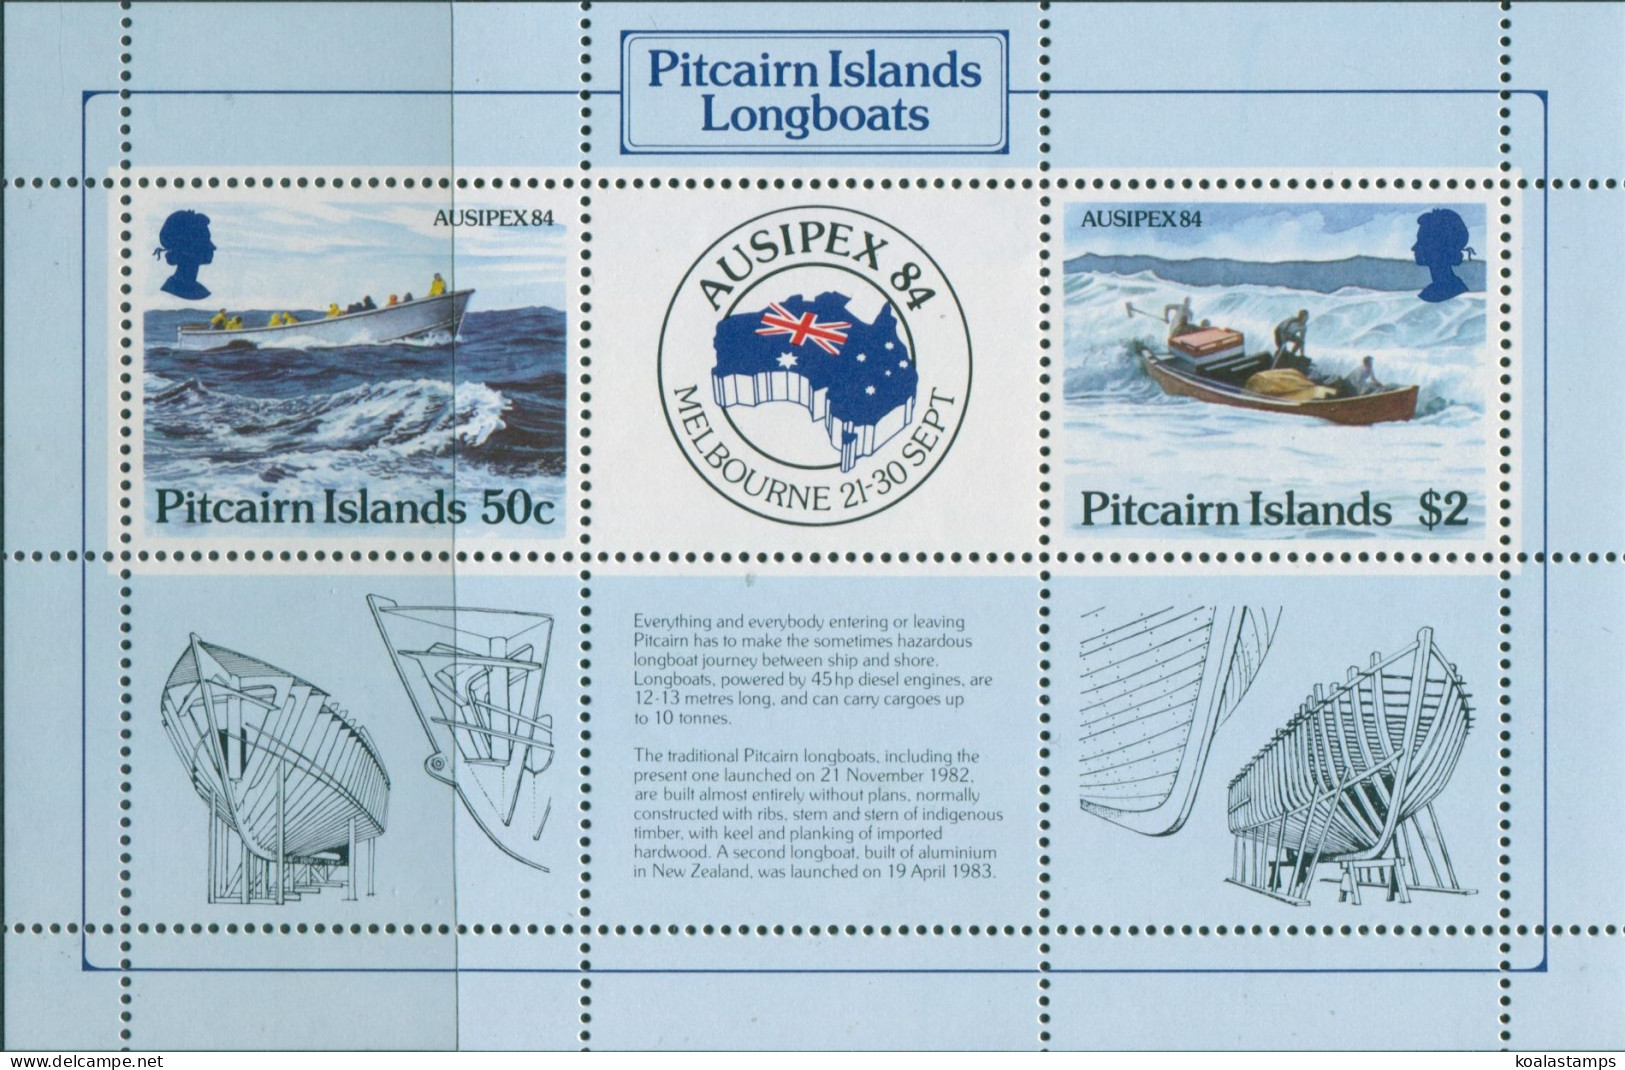 Pitcairn Islands 1984 SG263 Ausipex Longboats MS MNH - Pitcairneilanden